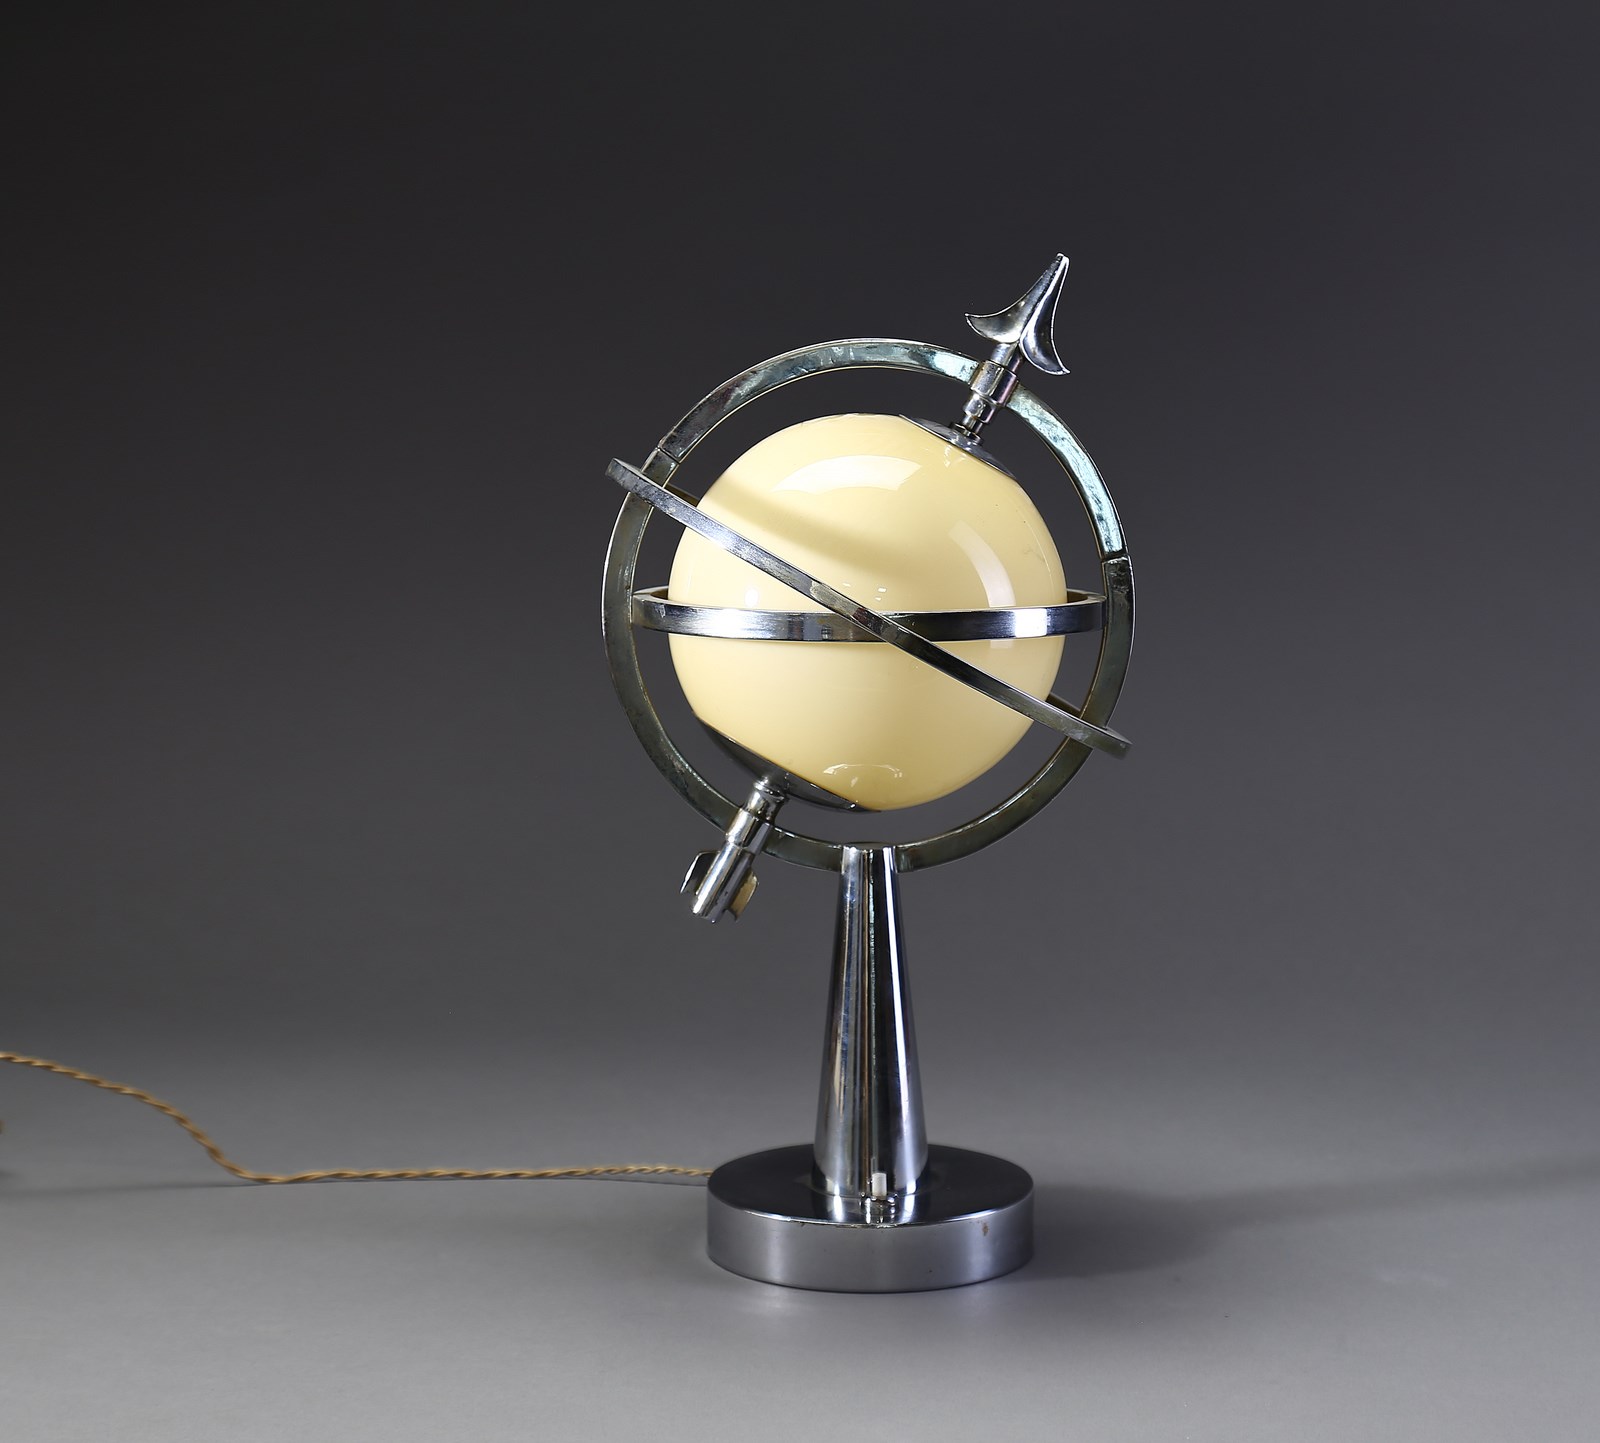 MANIFATTURA ITALIANA - Lampada da tavolo modello Saturno anni '30., Capitolium Art